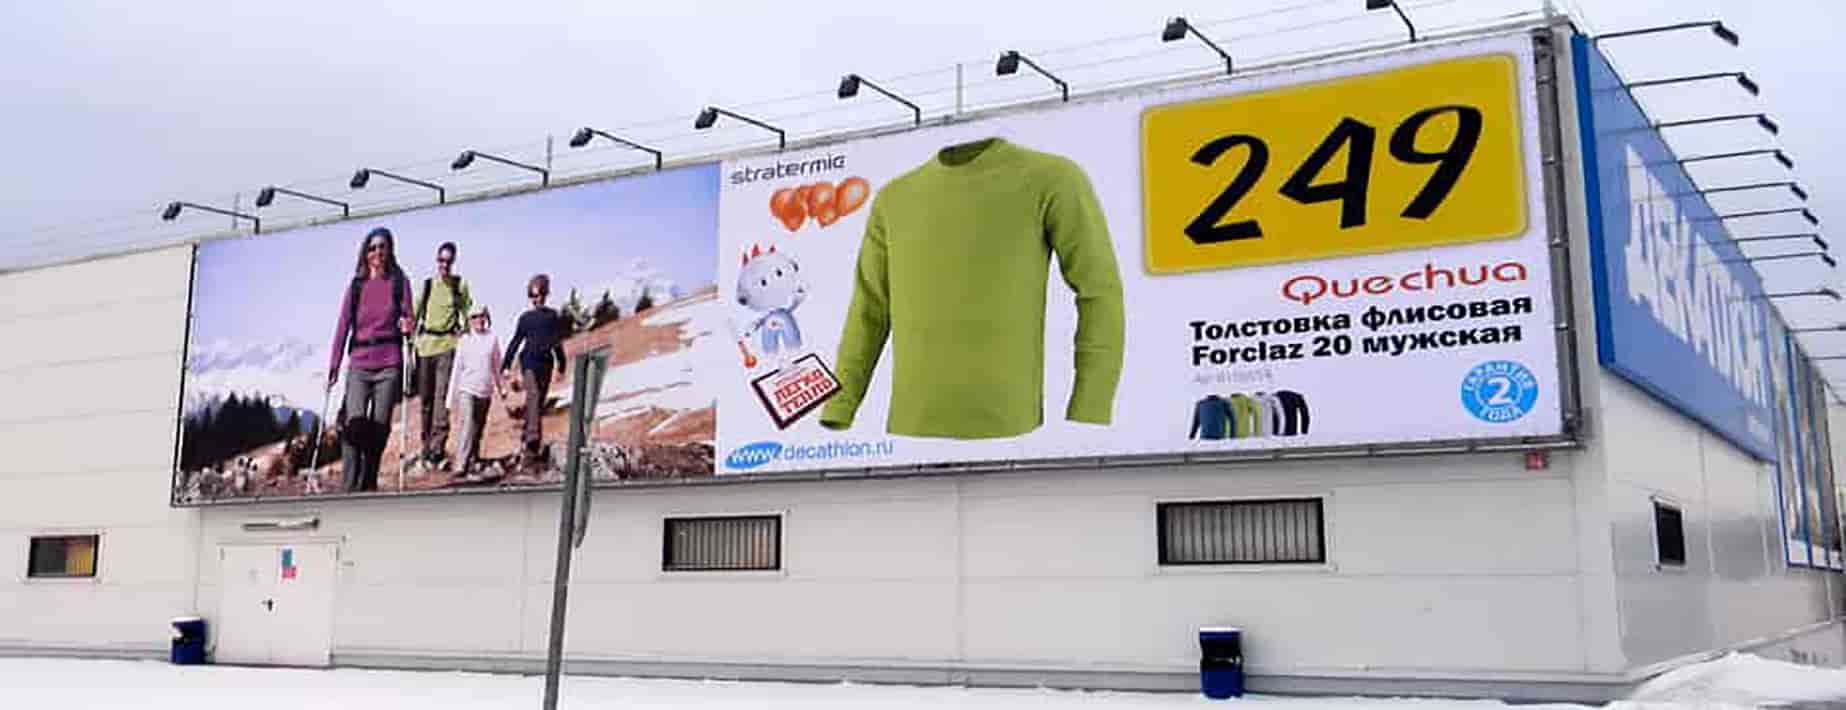 Рекламный баннер Киев